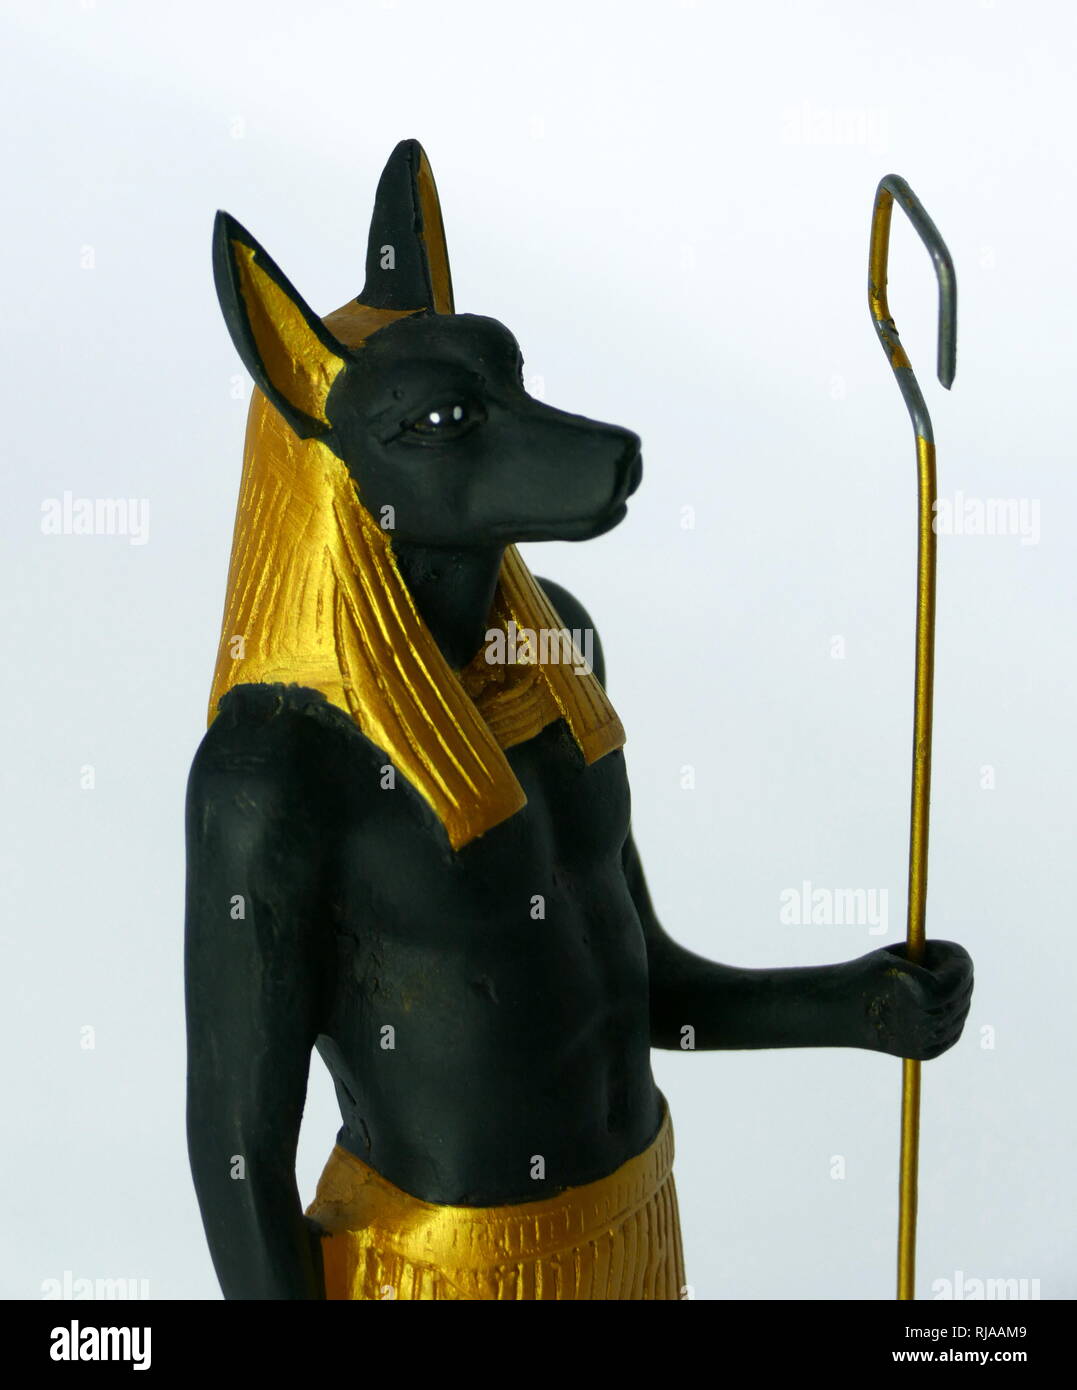 Moderne Replik Statuette des Anubis, der Gott mit der und das Leben nach dem Tod im alten ägyptischen Religion normalerweise als Hund oder ein Mann mit einem Hunde Kopf